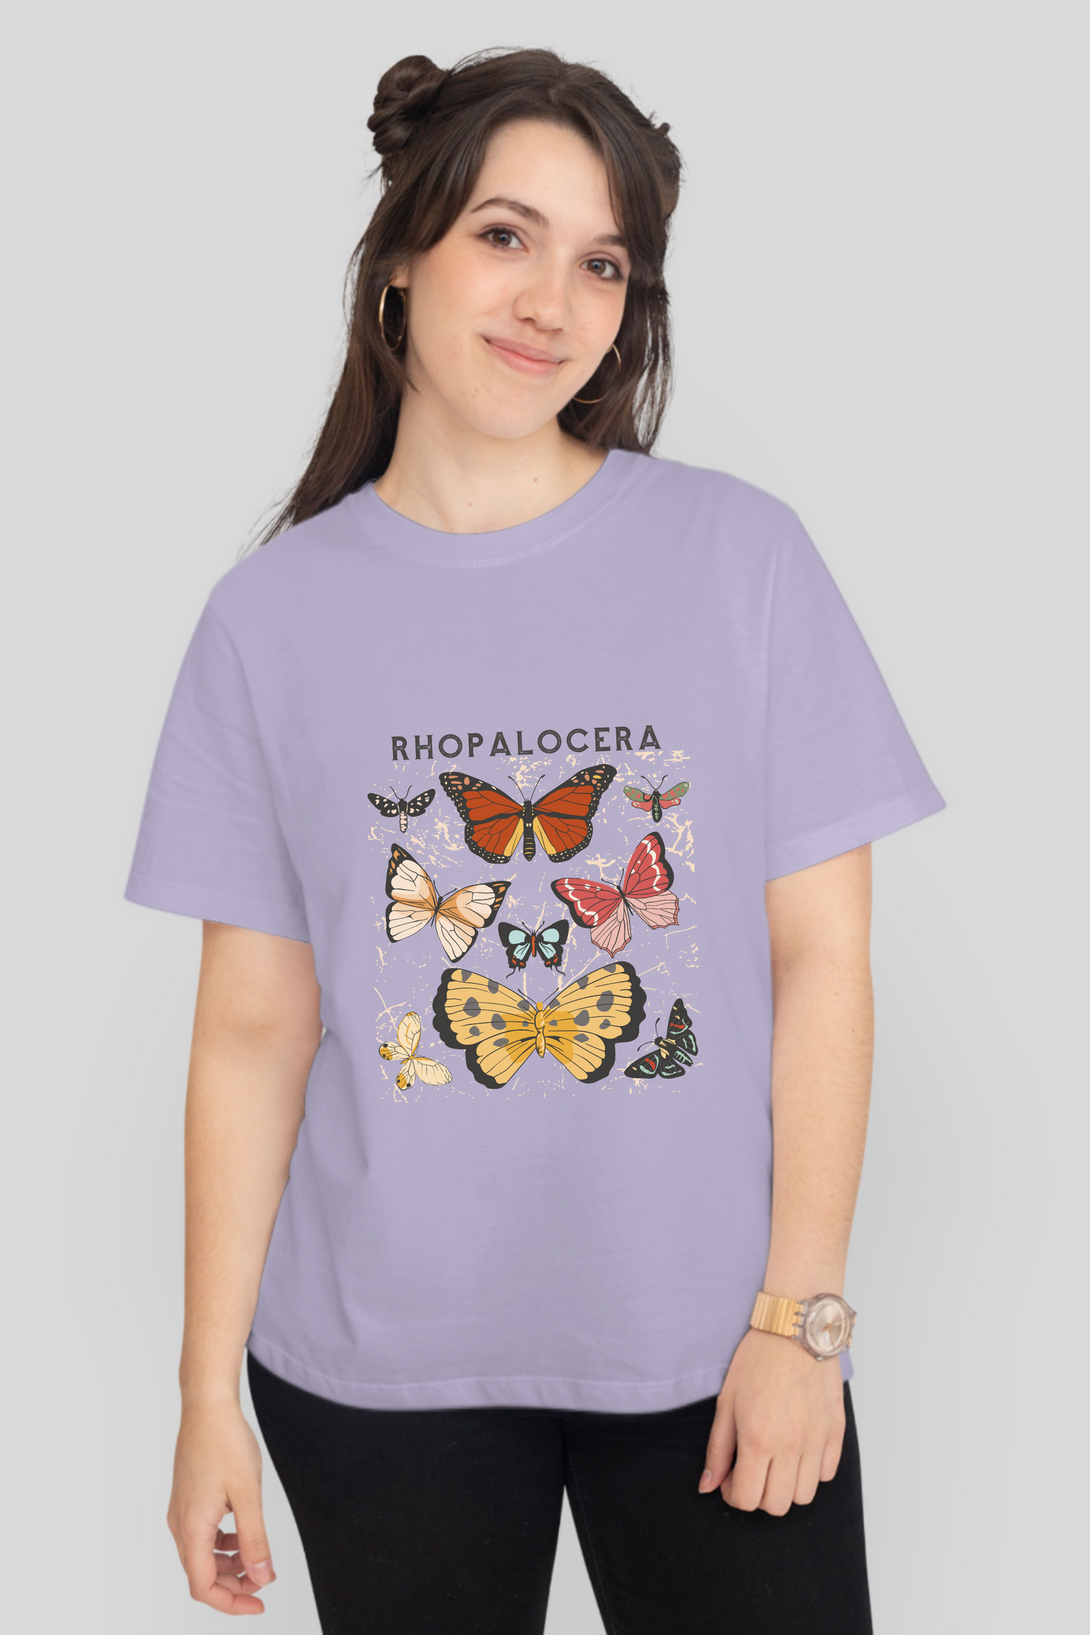 Rhopalocera Printed T-Shirt For Women - WowWaves - 9